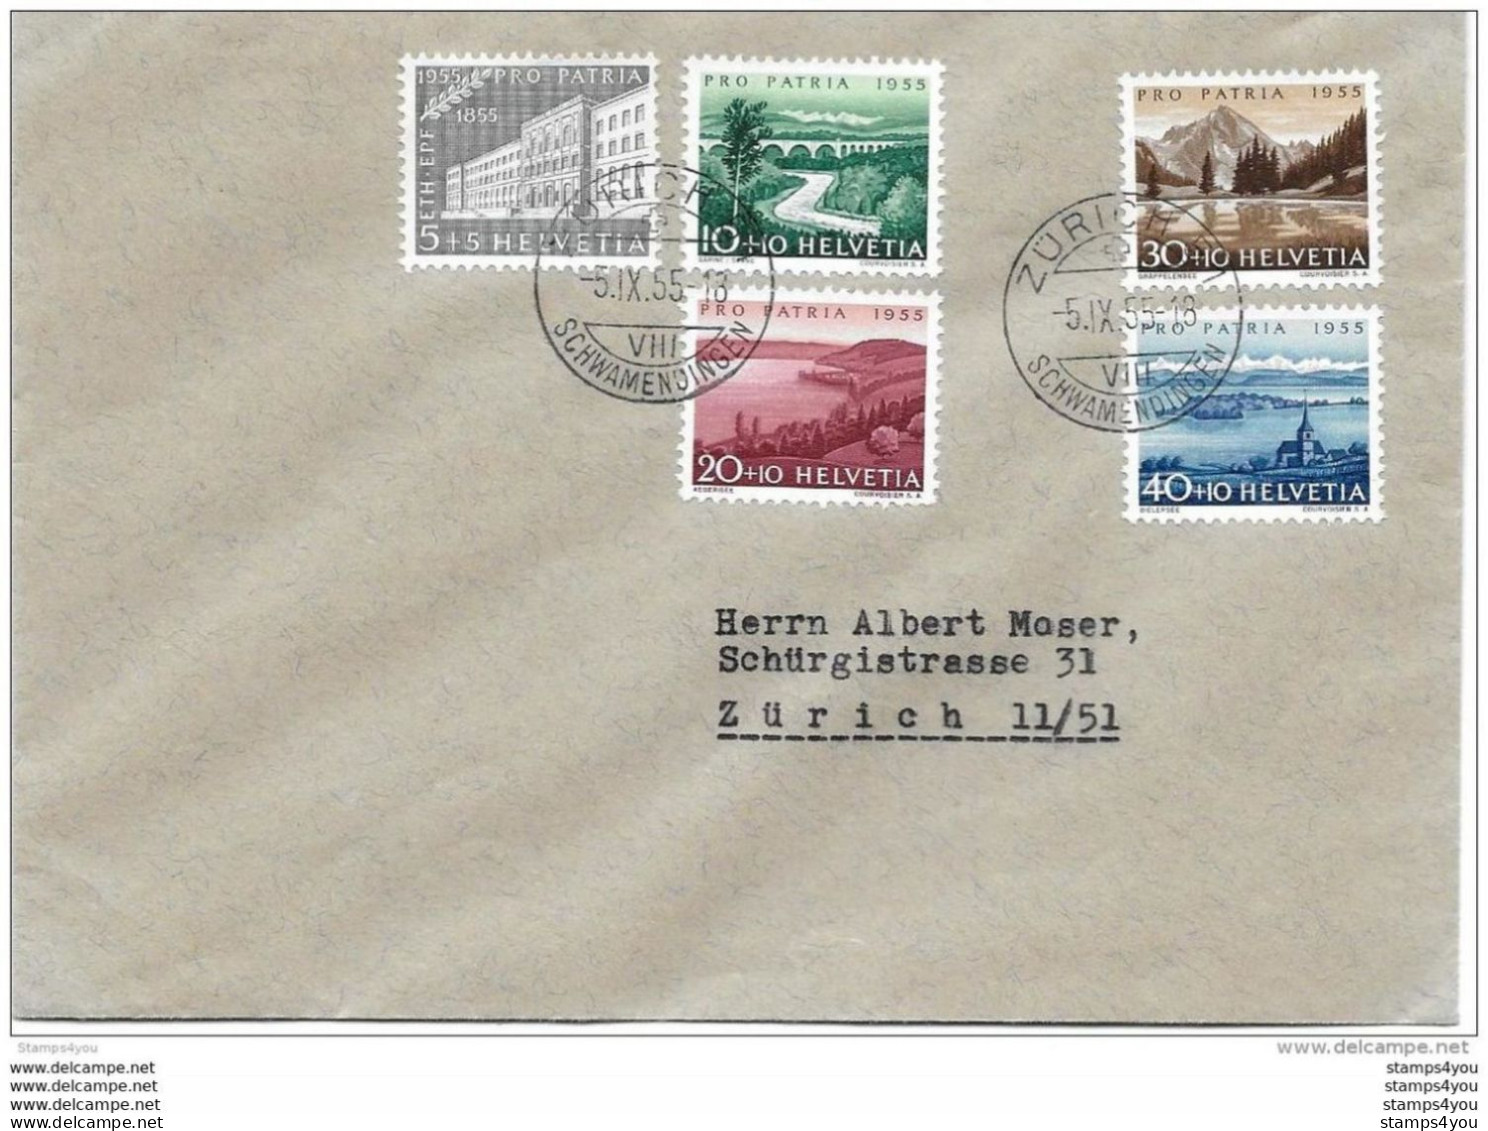 79 - 52 - Enveloppe  Avec Série Pro Patria 1955 - Cachets à Date Zürich Schwamendingen - Storia Postale